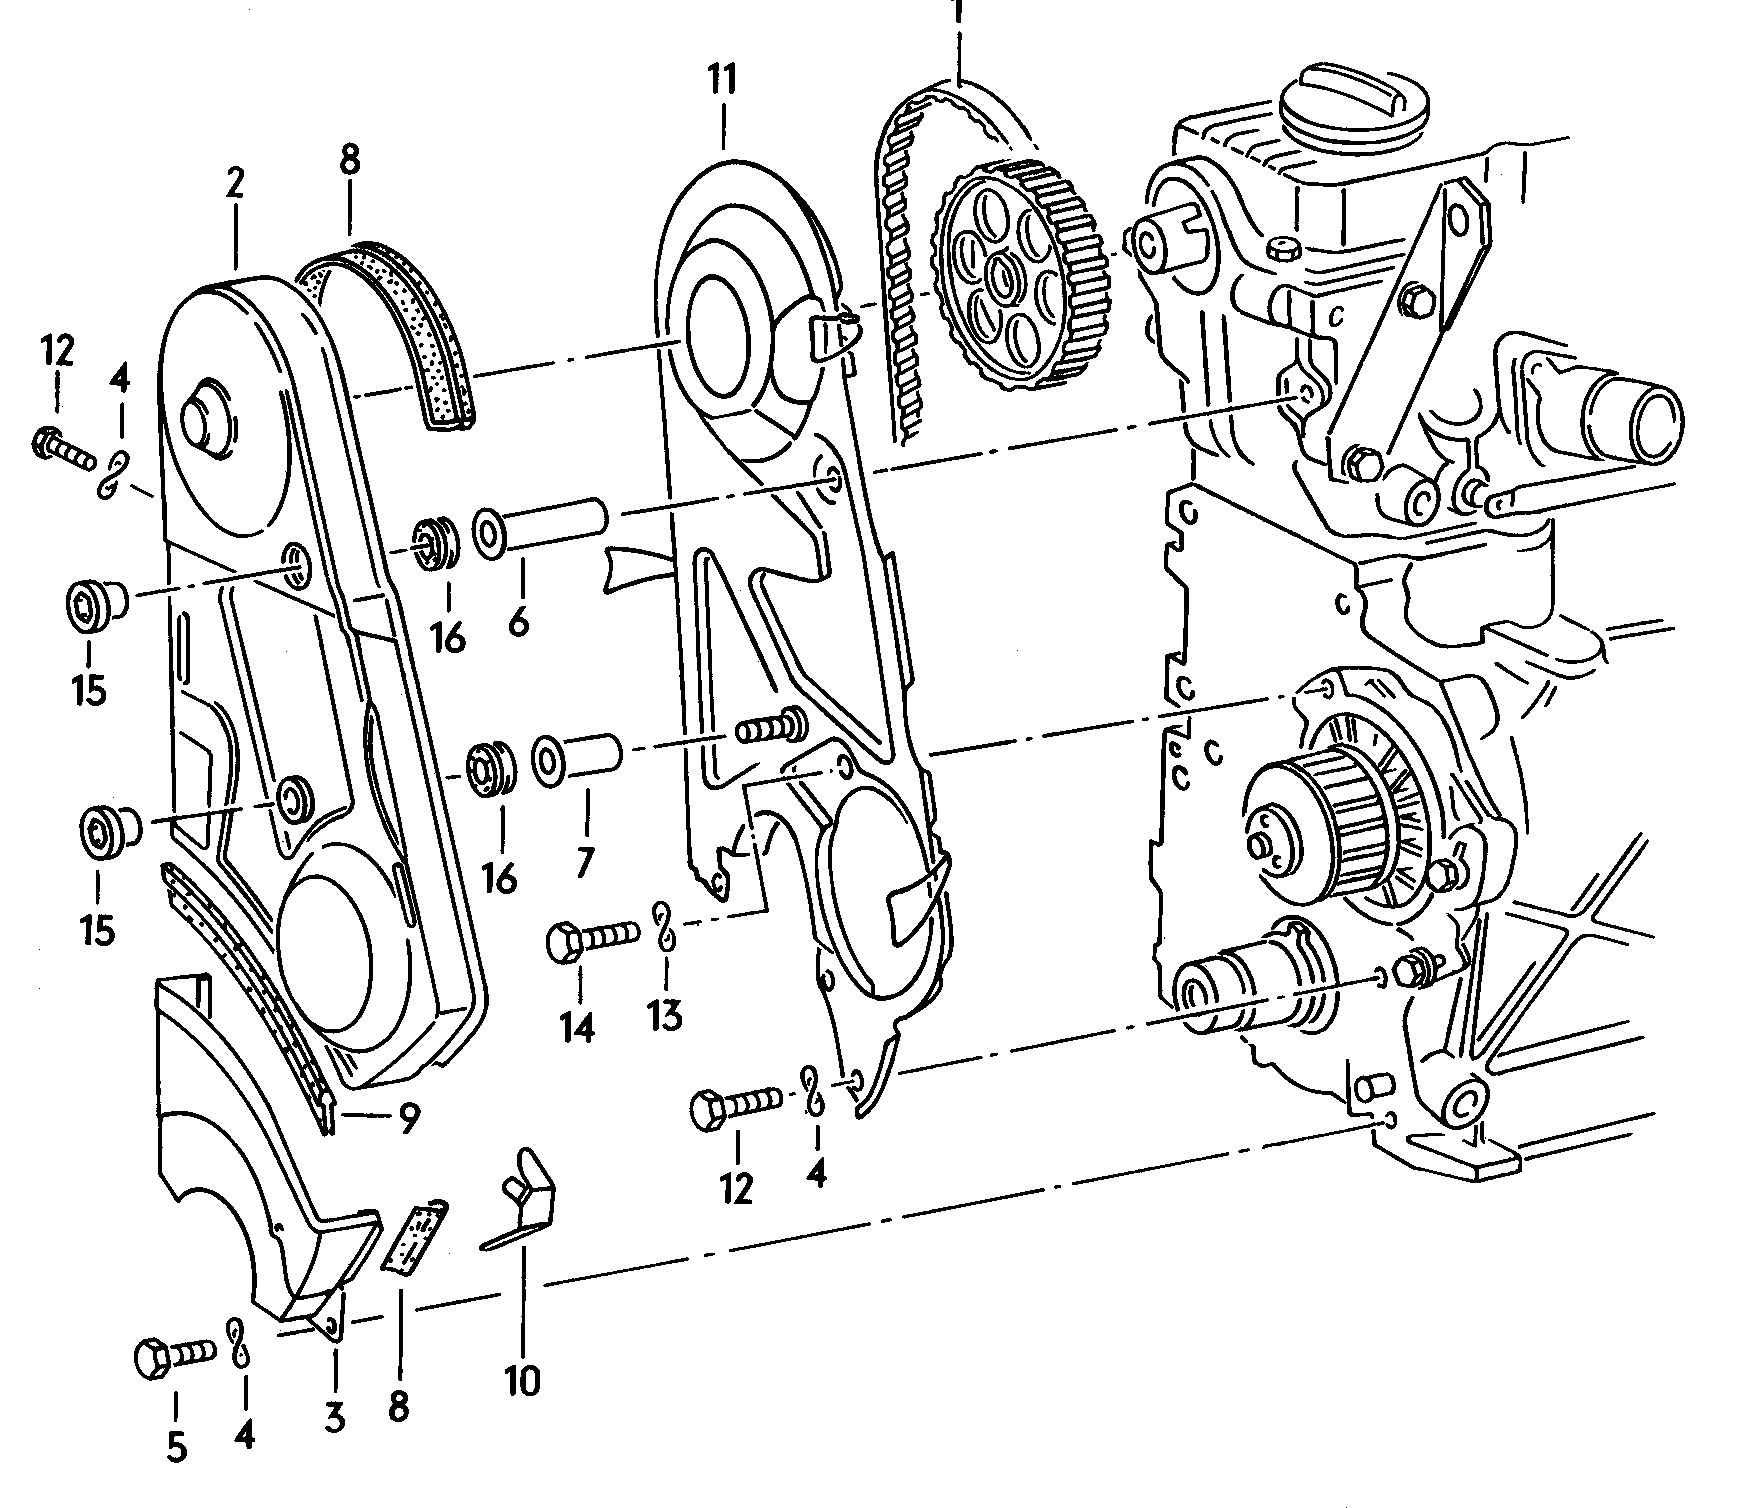 Triger kayışıTriger kayışı koruyucu 2,0-2,3Ltr. - Audi 100/Avant - a100